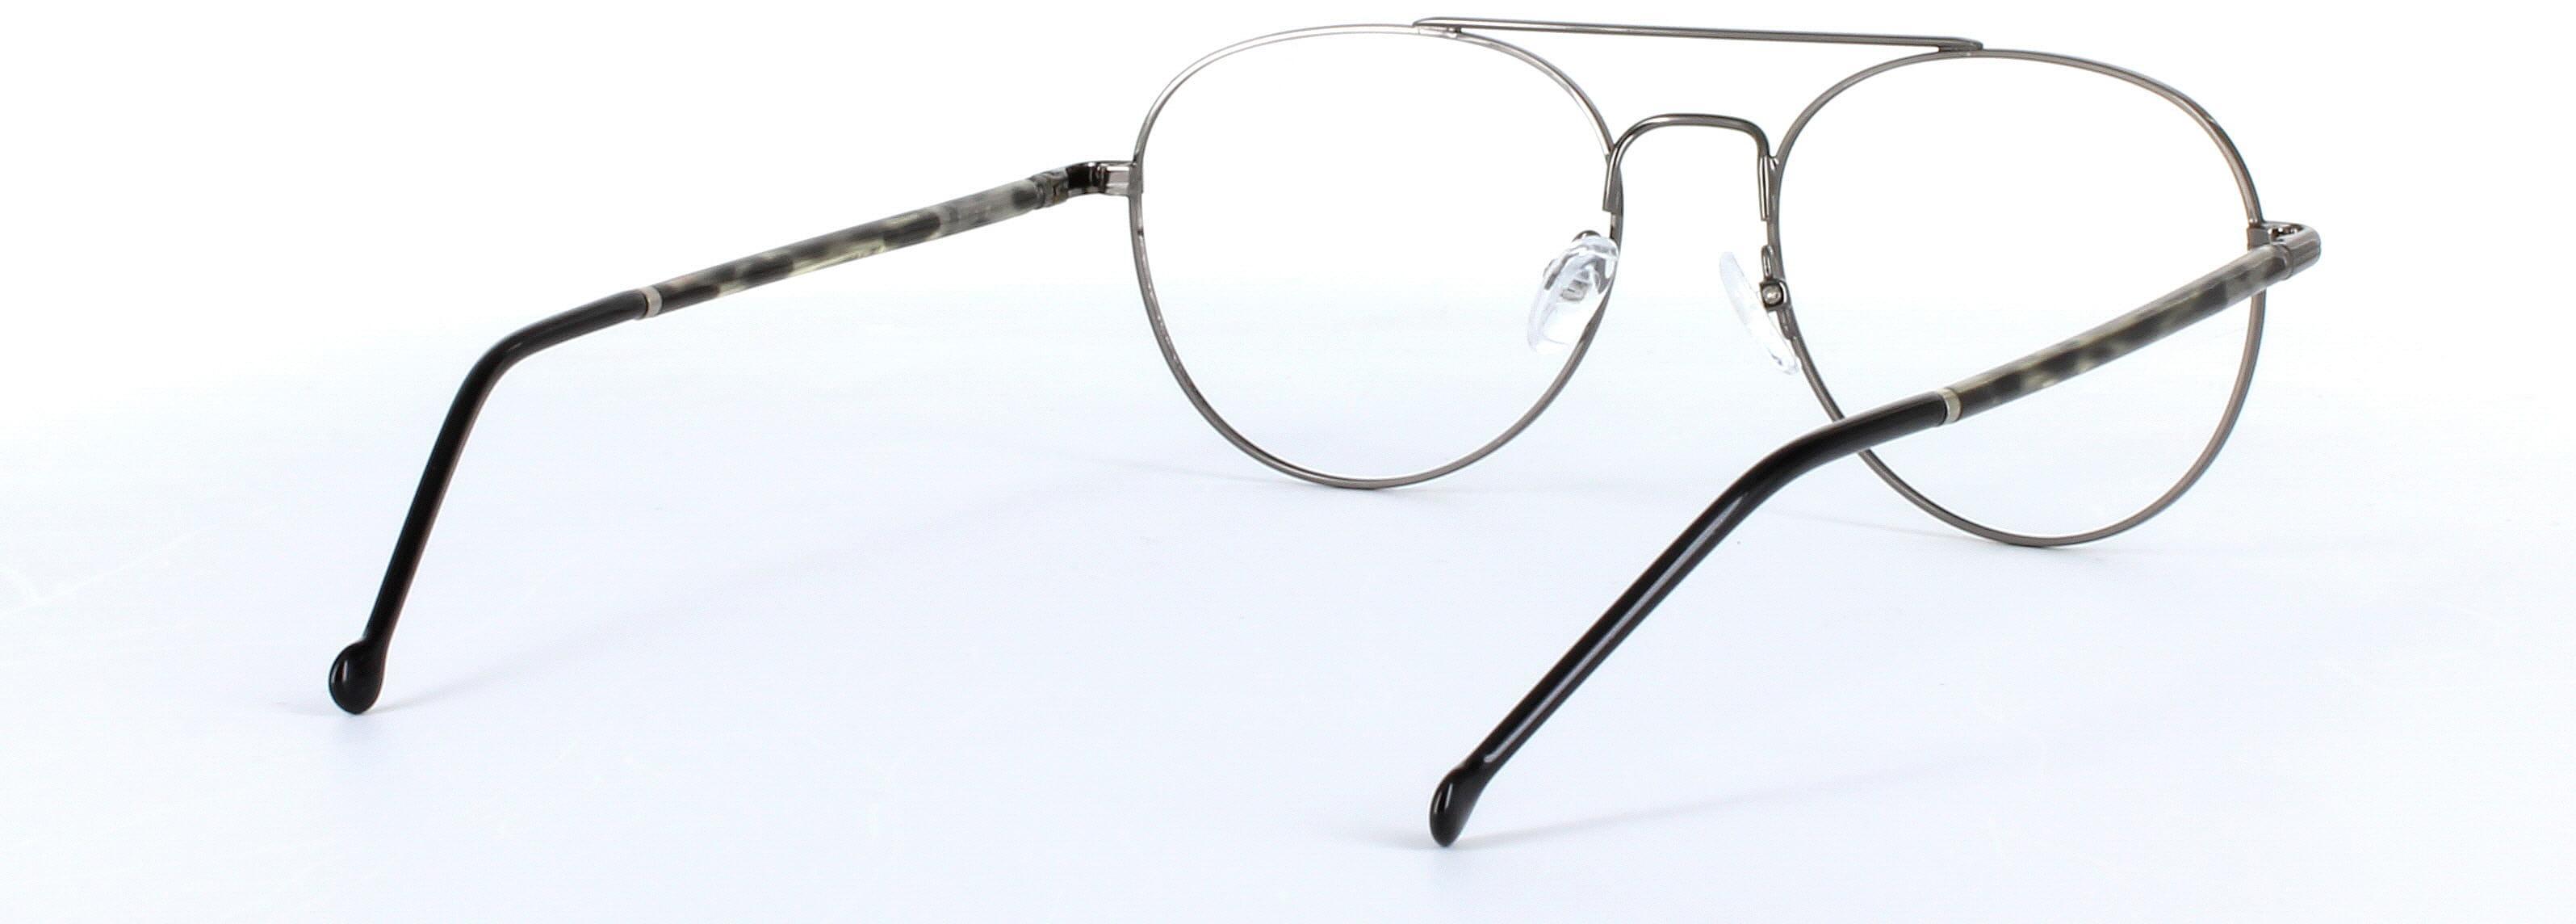 Emiliano Gunmetal Full Rim Aviator Metal Glasses - Image View 4